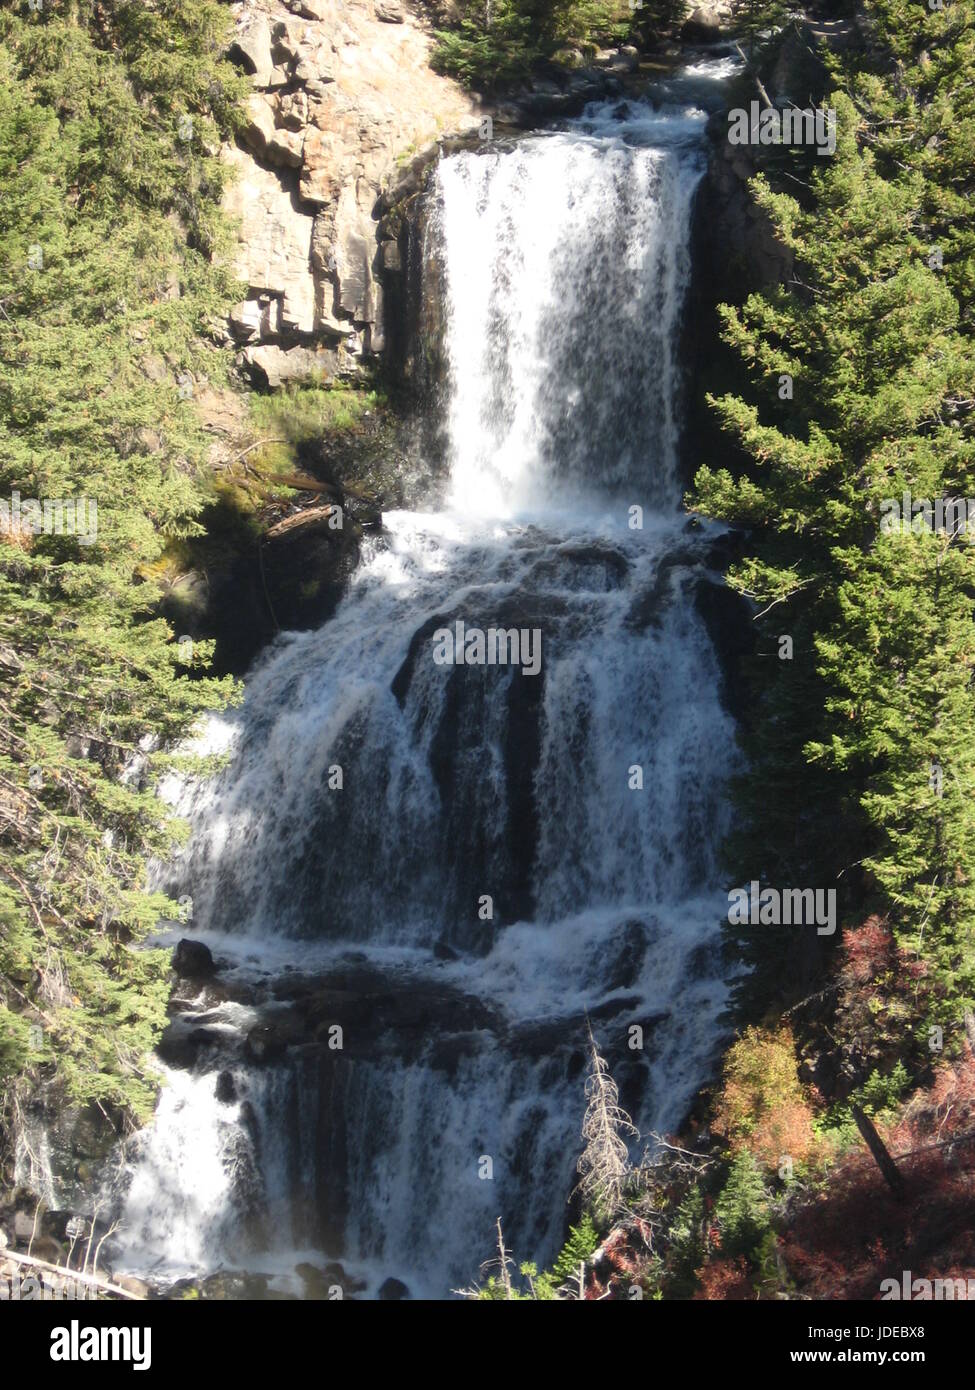 Amazing Yellowstone waterfall Stock Photo